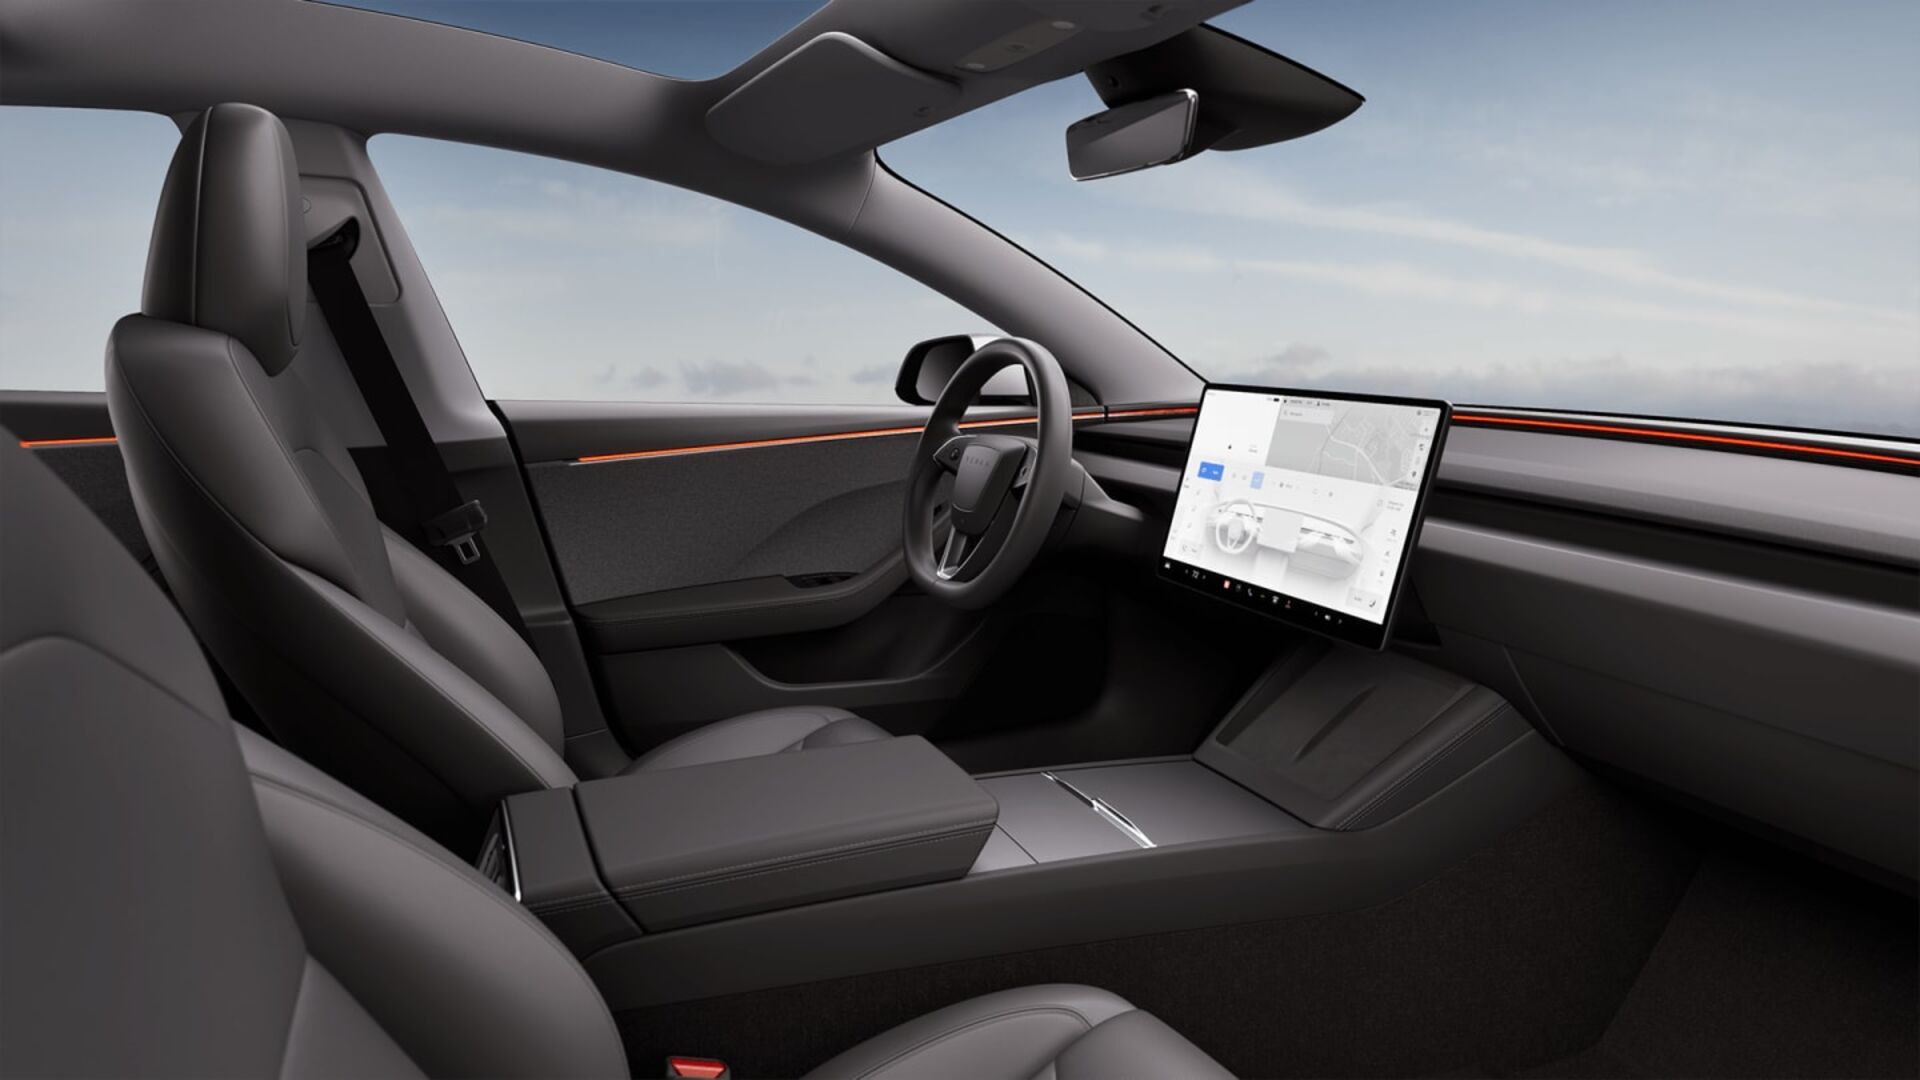 Facelift Tesla Model 3 - erste Bilder, Preise und Reichweite für